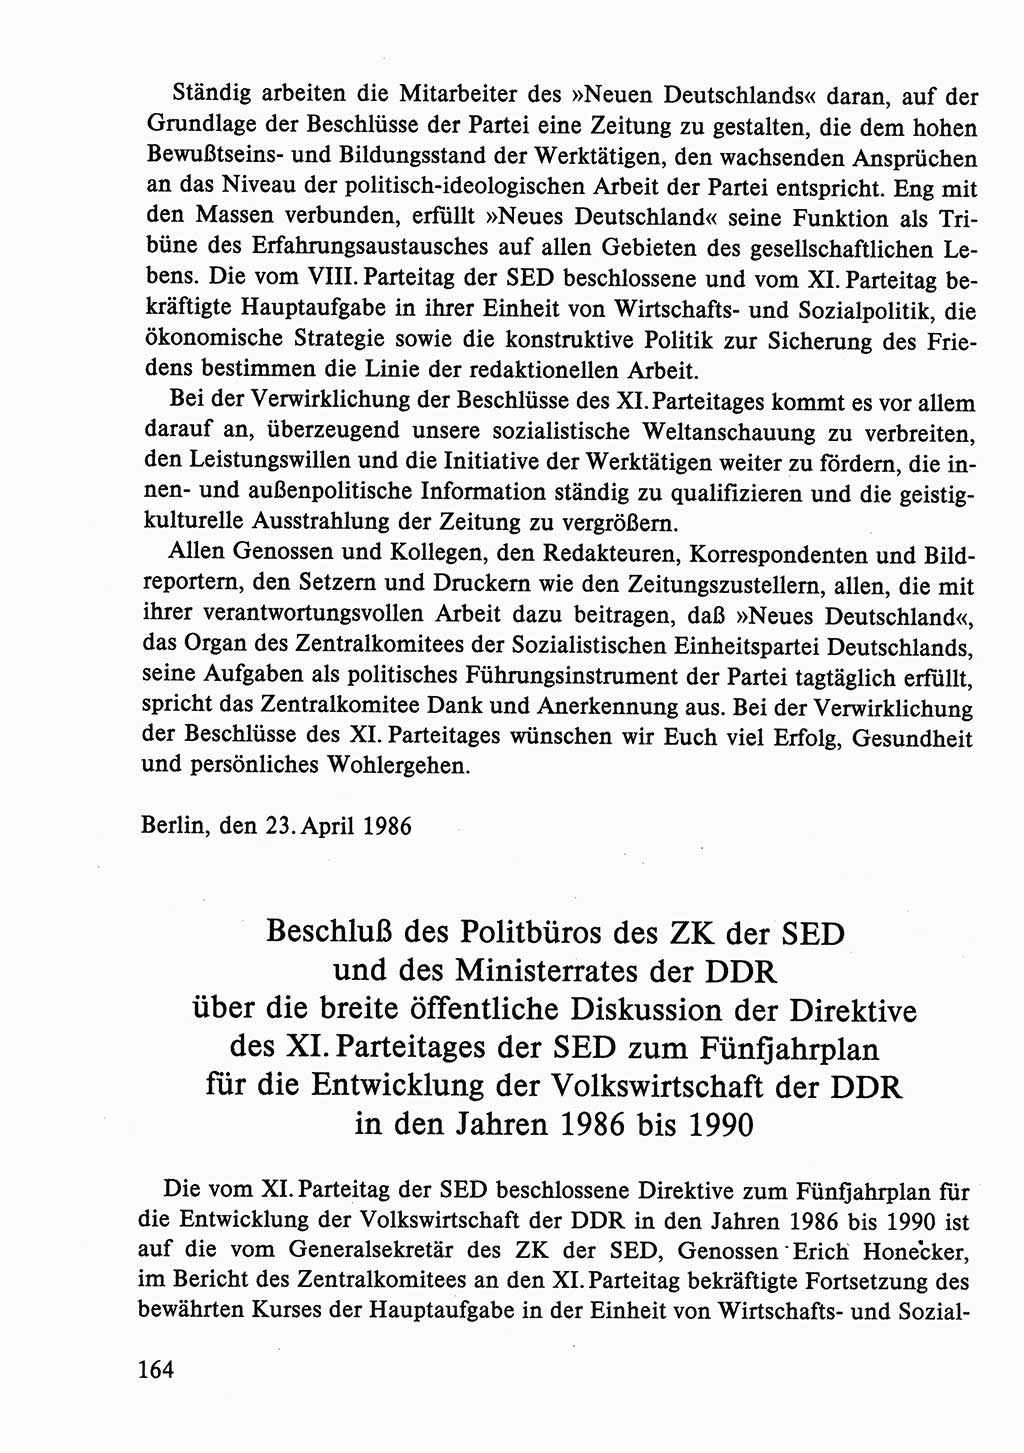 Dokumente der Sozialistischen Einheitspartei Deutschlands (SED) [Deutsche Demokratische Republik (DDR)] 1986-1987, Seite 164 (Dok. SED DDR 1986-1987, S. 164)